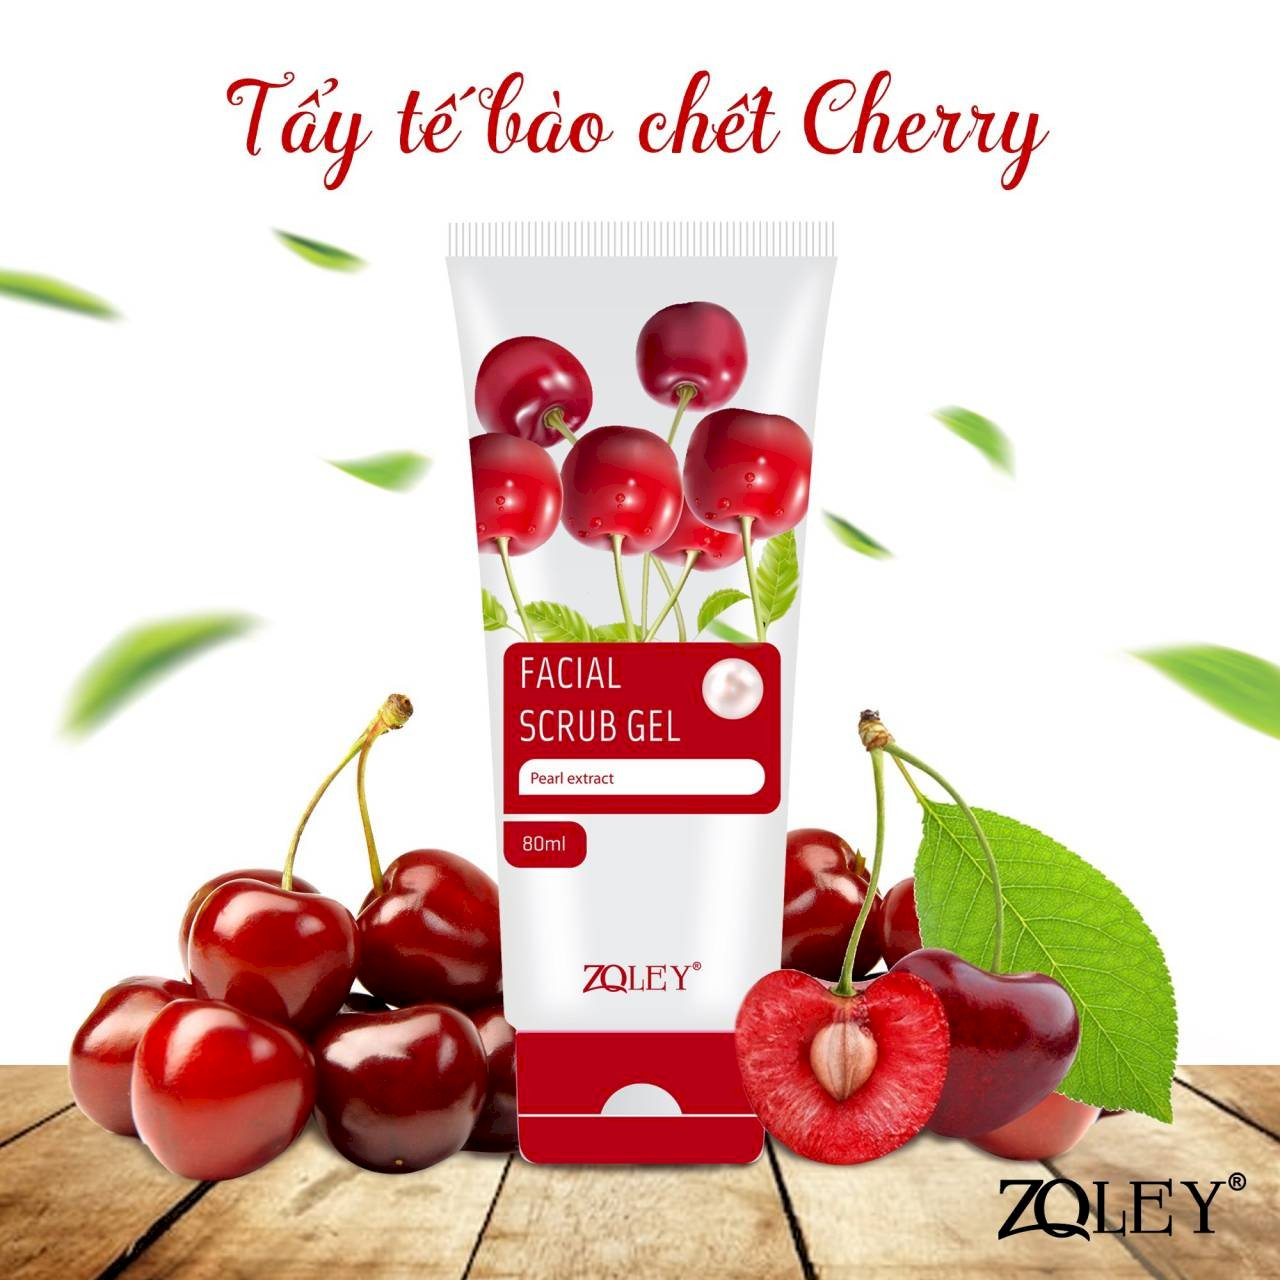 Zoley là một trong các thương hiệu mỹ phẩm chất lượng tại Việt Nam